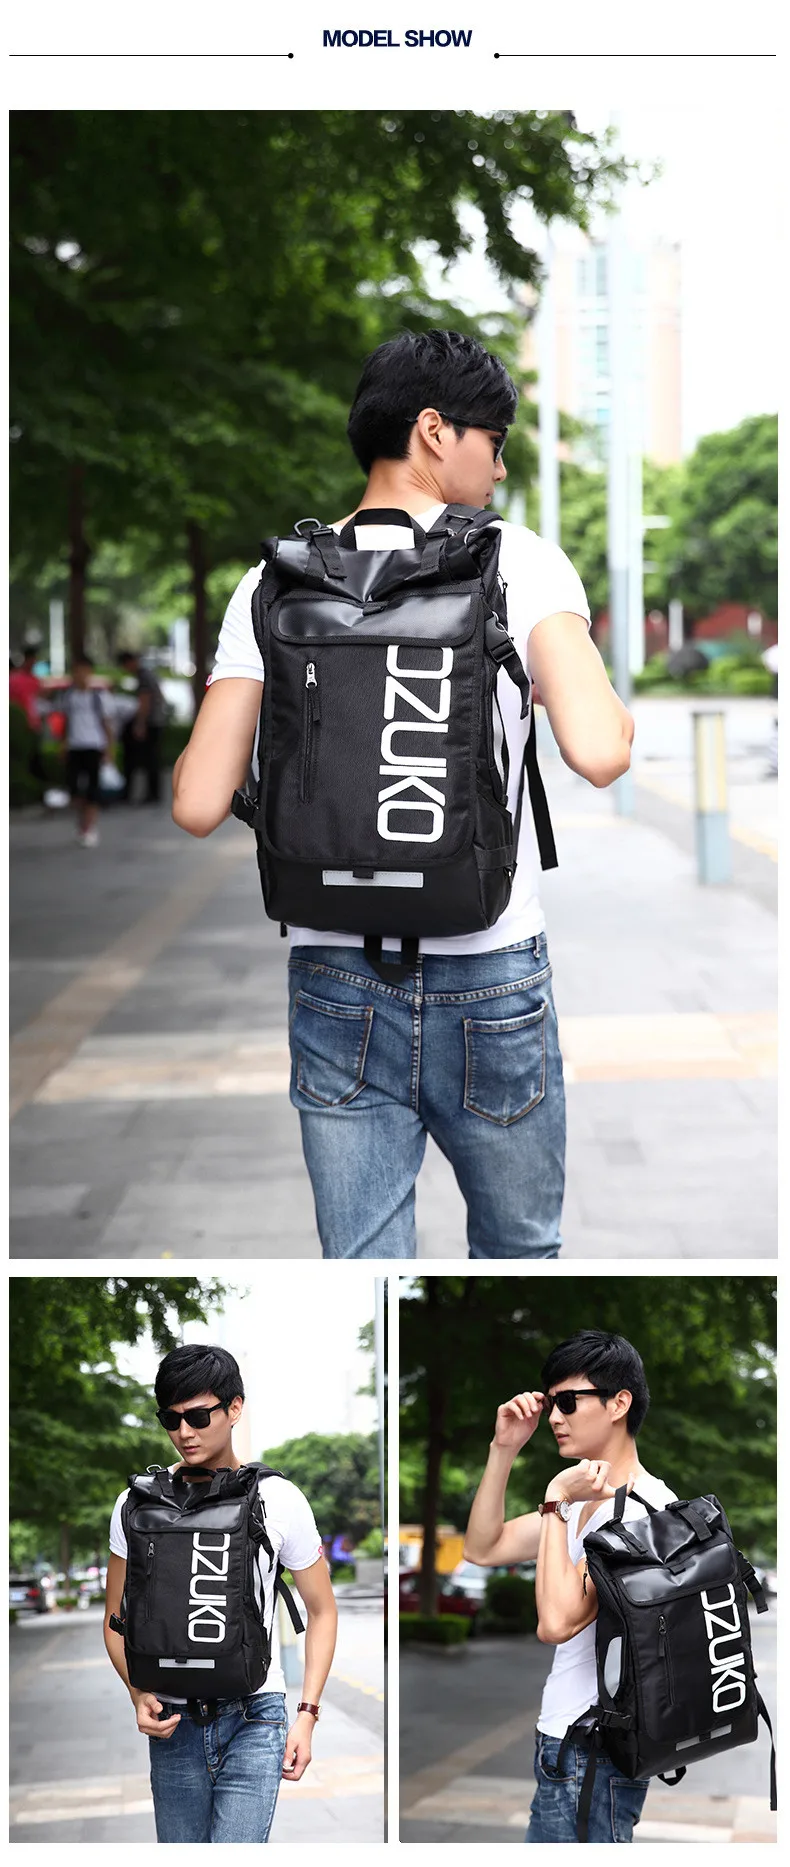 OZUKO, мужской рюкзак для путешествий, для ноутбука, дизайнерский, Оксфорд, водонепроницаемый, большой рюкзак, повседневная школьная сумка для подростков, masculina Mochila